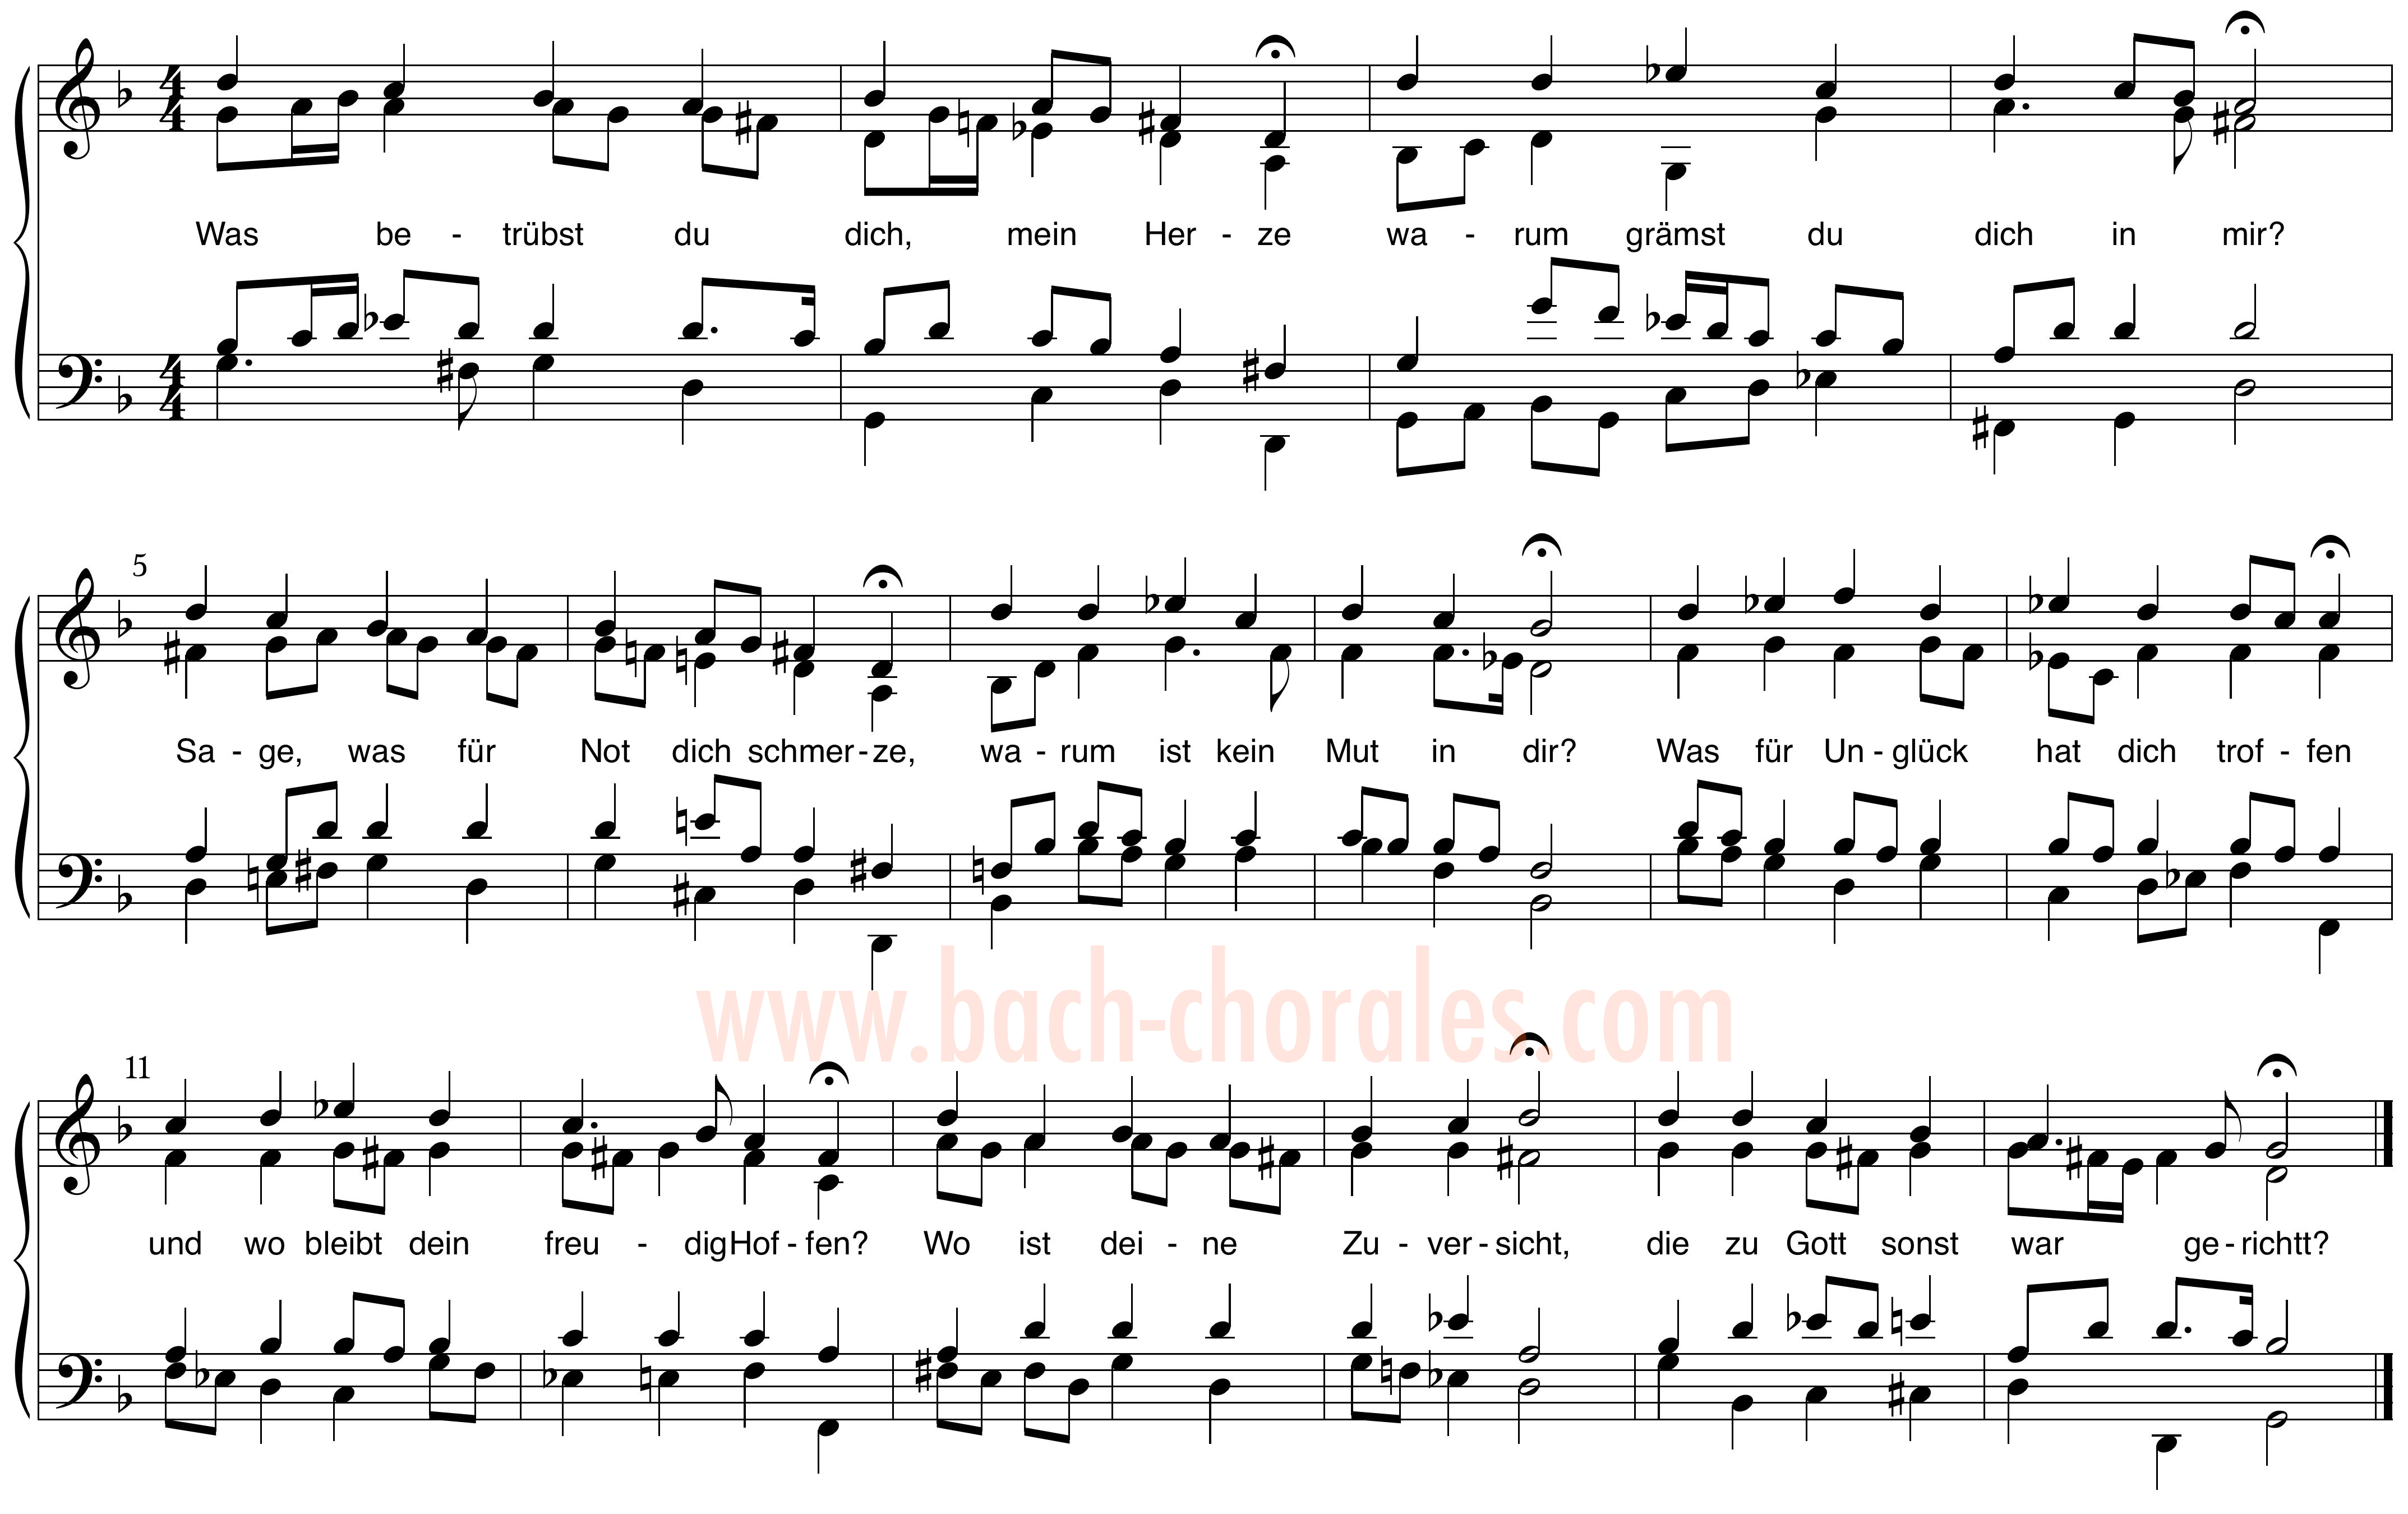 notenbeeld BWV 423 op https://www.bach-chorales.com/